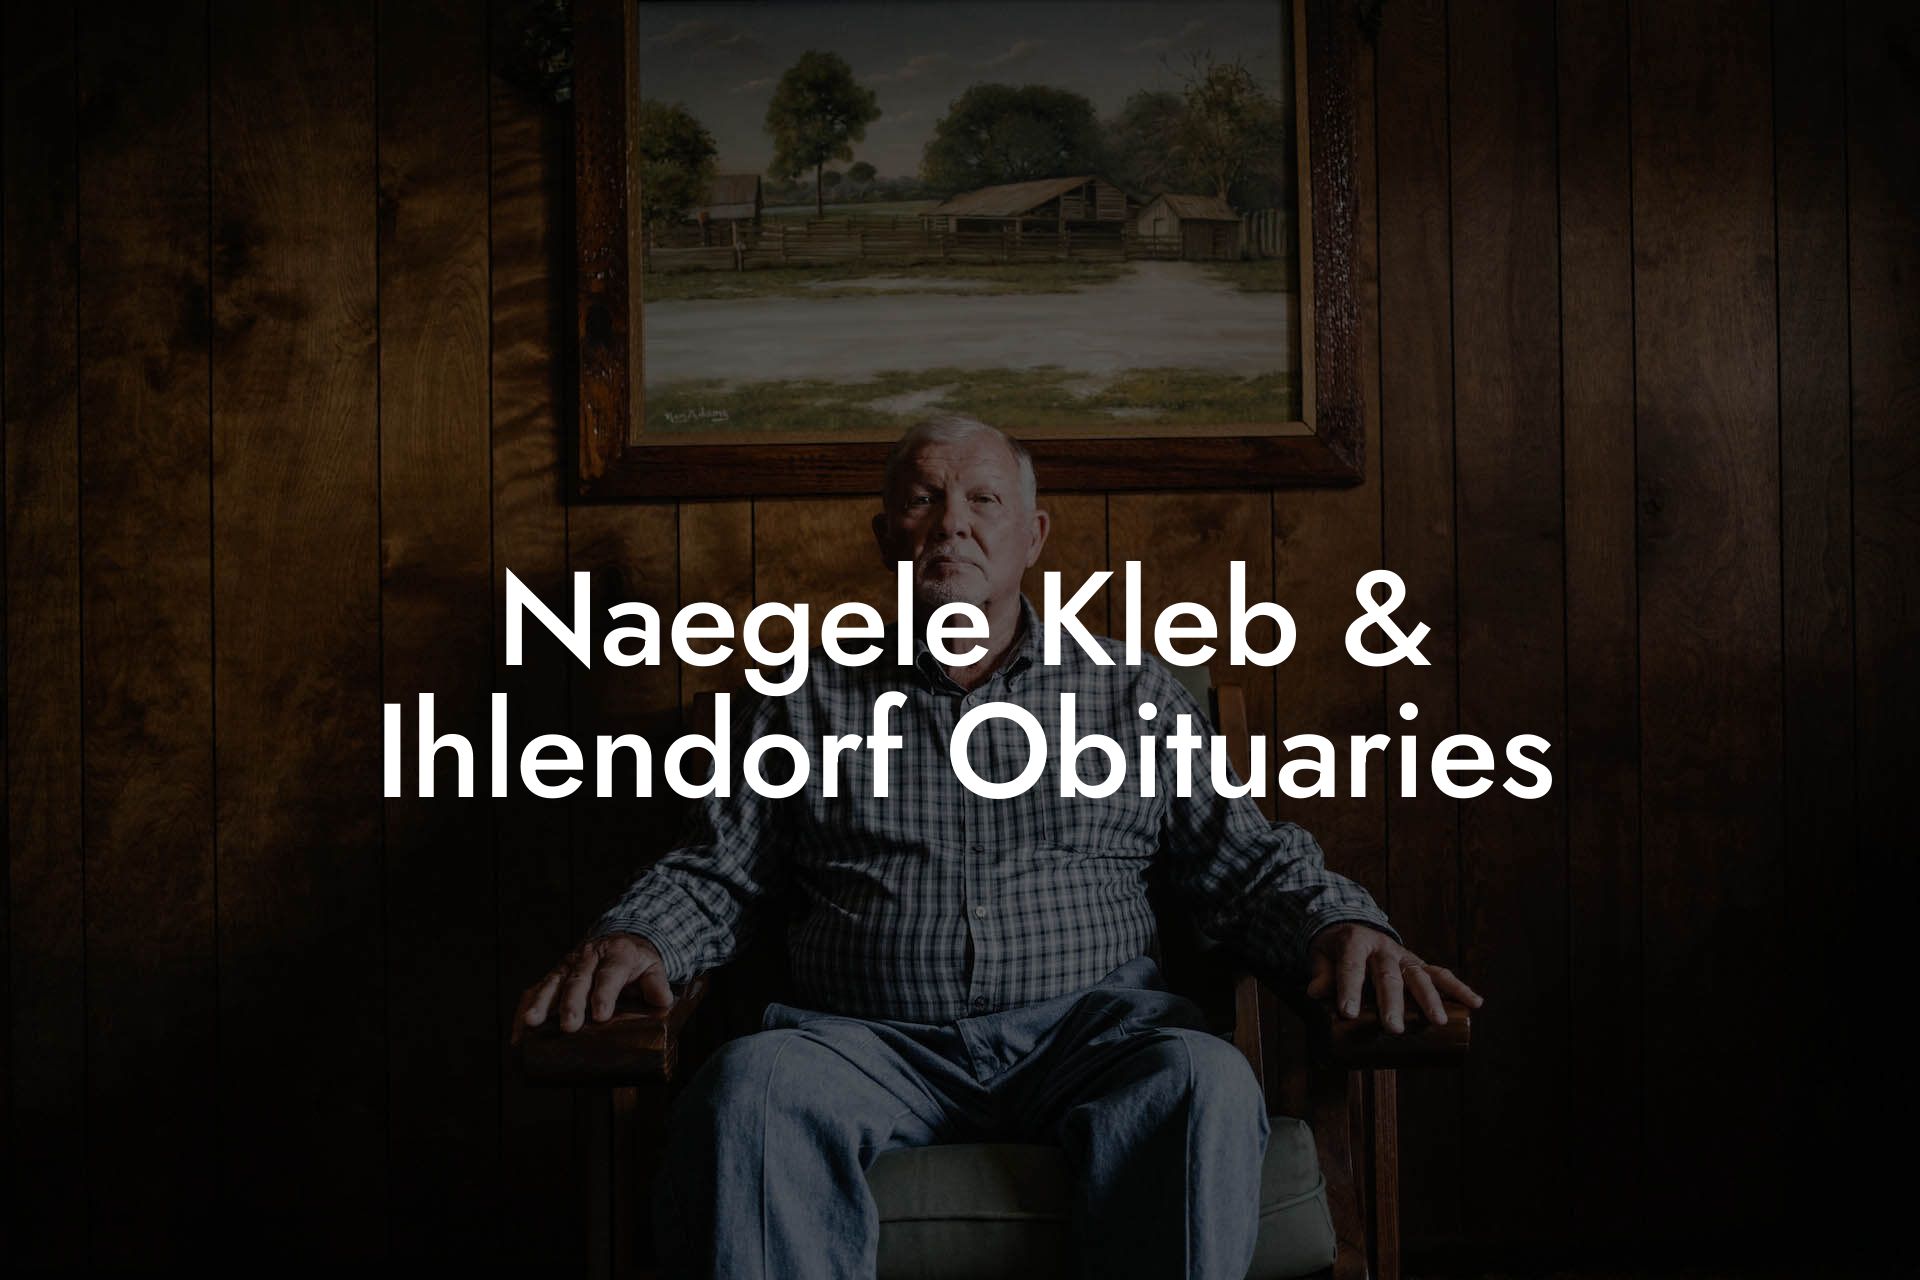 Naegele Kleb & Ihlendorf Obituaries